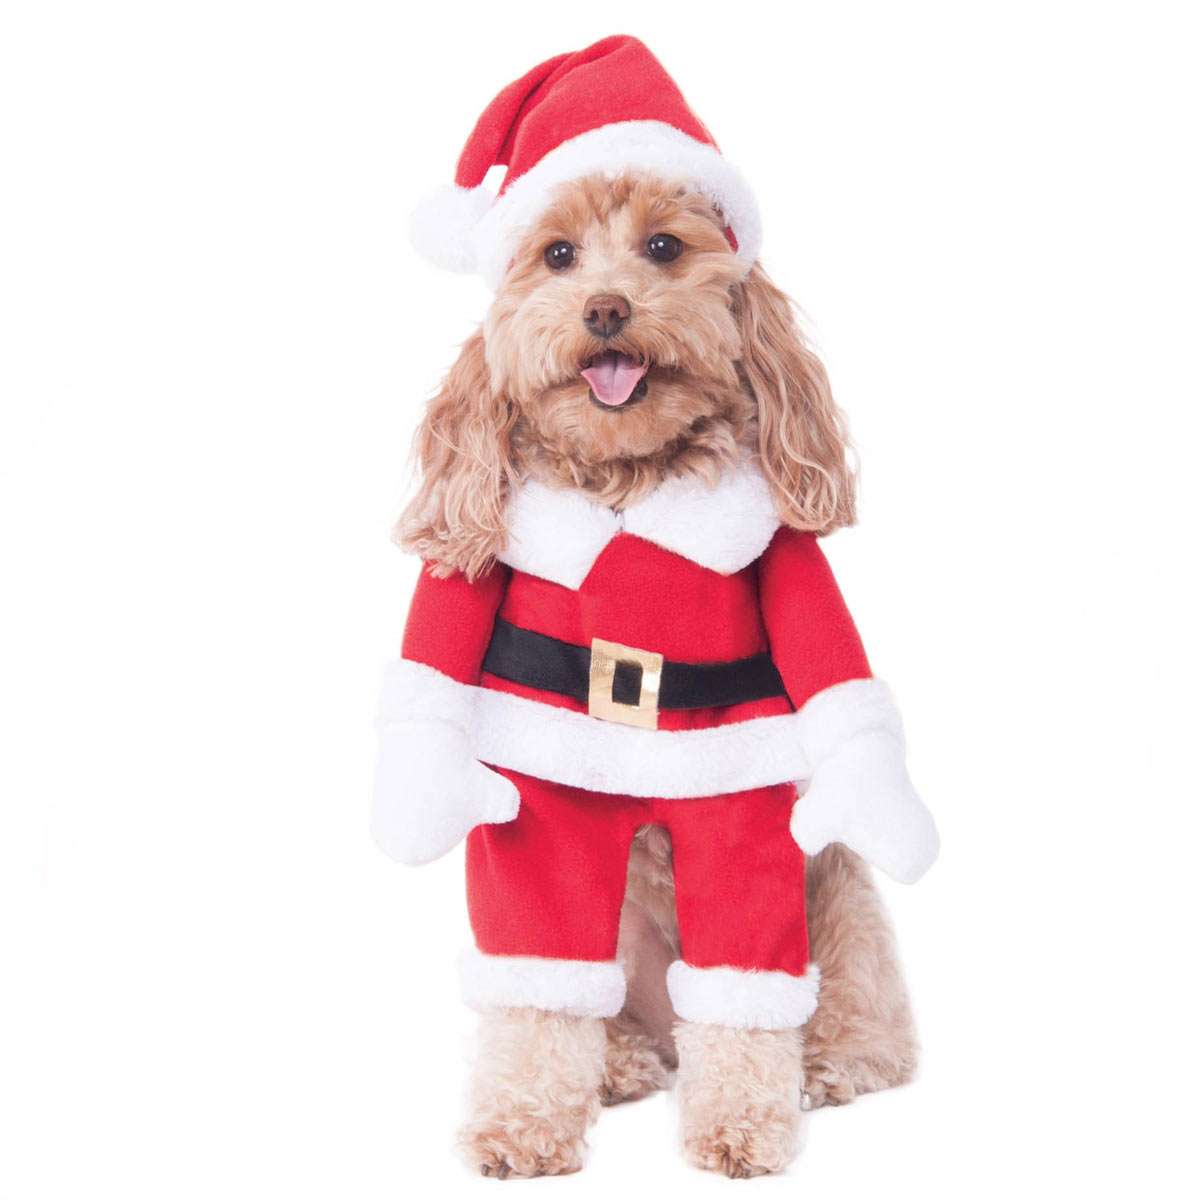 Christmas クリスマスウォーキング サンタ ペット コスチューム遠い昔、遥か彼方の銀河系舞台に繰り広げられる、20世紀に名を残す偉大なSF映画 !Ho! Ho! Ho! サンタが街にやってきて、おやつを食べようとしています。サンタ・ペット・ウォーキング・コスチュームで、犬をテーマにしたホリデーを過ごしましょう。この赤と白のアンサンブルは、誰もが彼らが陽気なセントニックであることを確信し、それは彼らが皆のクッキーを奪うことを容易にするでしょう。腕がゆらゆらしていて可愛いですよ。● 商品名ウォーキング サンタ ペット コスチュームWalking Santa Pet Costume● 商品内容腕が付いたスーツ、ヘッドピース● 素材polyester● 商品詳細腕が付いたスーツ、ヘッドピース1977年から始まるスター・ウォーズシリーズ1977年の「エピソード4/新たなる希望」から始まり現在まで続く世界で最も興行的成功を収めた映画シリーズのスターウォーズ。歴史の長い作品のため、親子で一緒に楽しめる数少ない作品です。偽物・コピー商品にご注意 人気キャラクターは偽物・コピー商品の生産も盛んです。激安価格や偽公式サイトにはご注意ください。 当店の商品は『 100% 正規品保障！ 』です。安心してお買い物をお楽しみください。STAR WARS ( スターウォーズ )⇒　ブランドページはこちらから